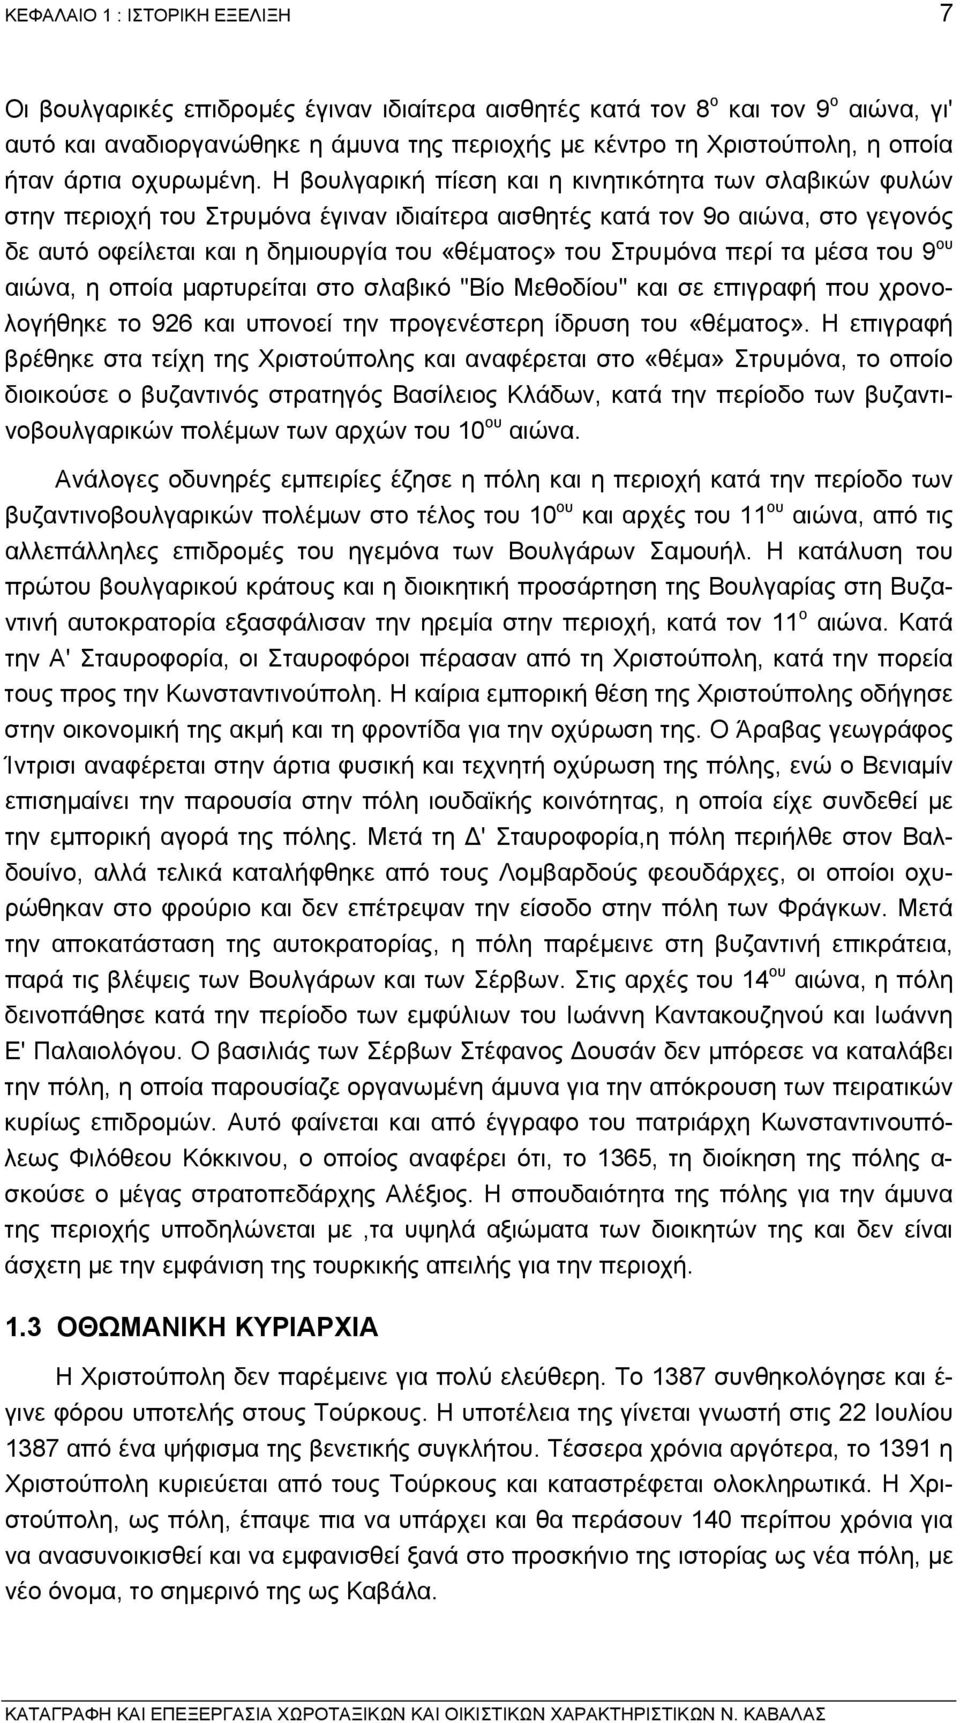 Η βουλγαρική πίεση και η κινητικότητα των σλαβικών φυλών στην περιοχή του Στρυµόνα έγιναν ιδιαίτερα αισθητές κατά τον 9ο αιώνα, στο γεγονός δε αυτό οφείλεται και η δηµιουργία του «θέµατος» του